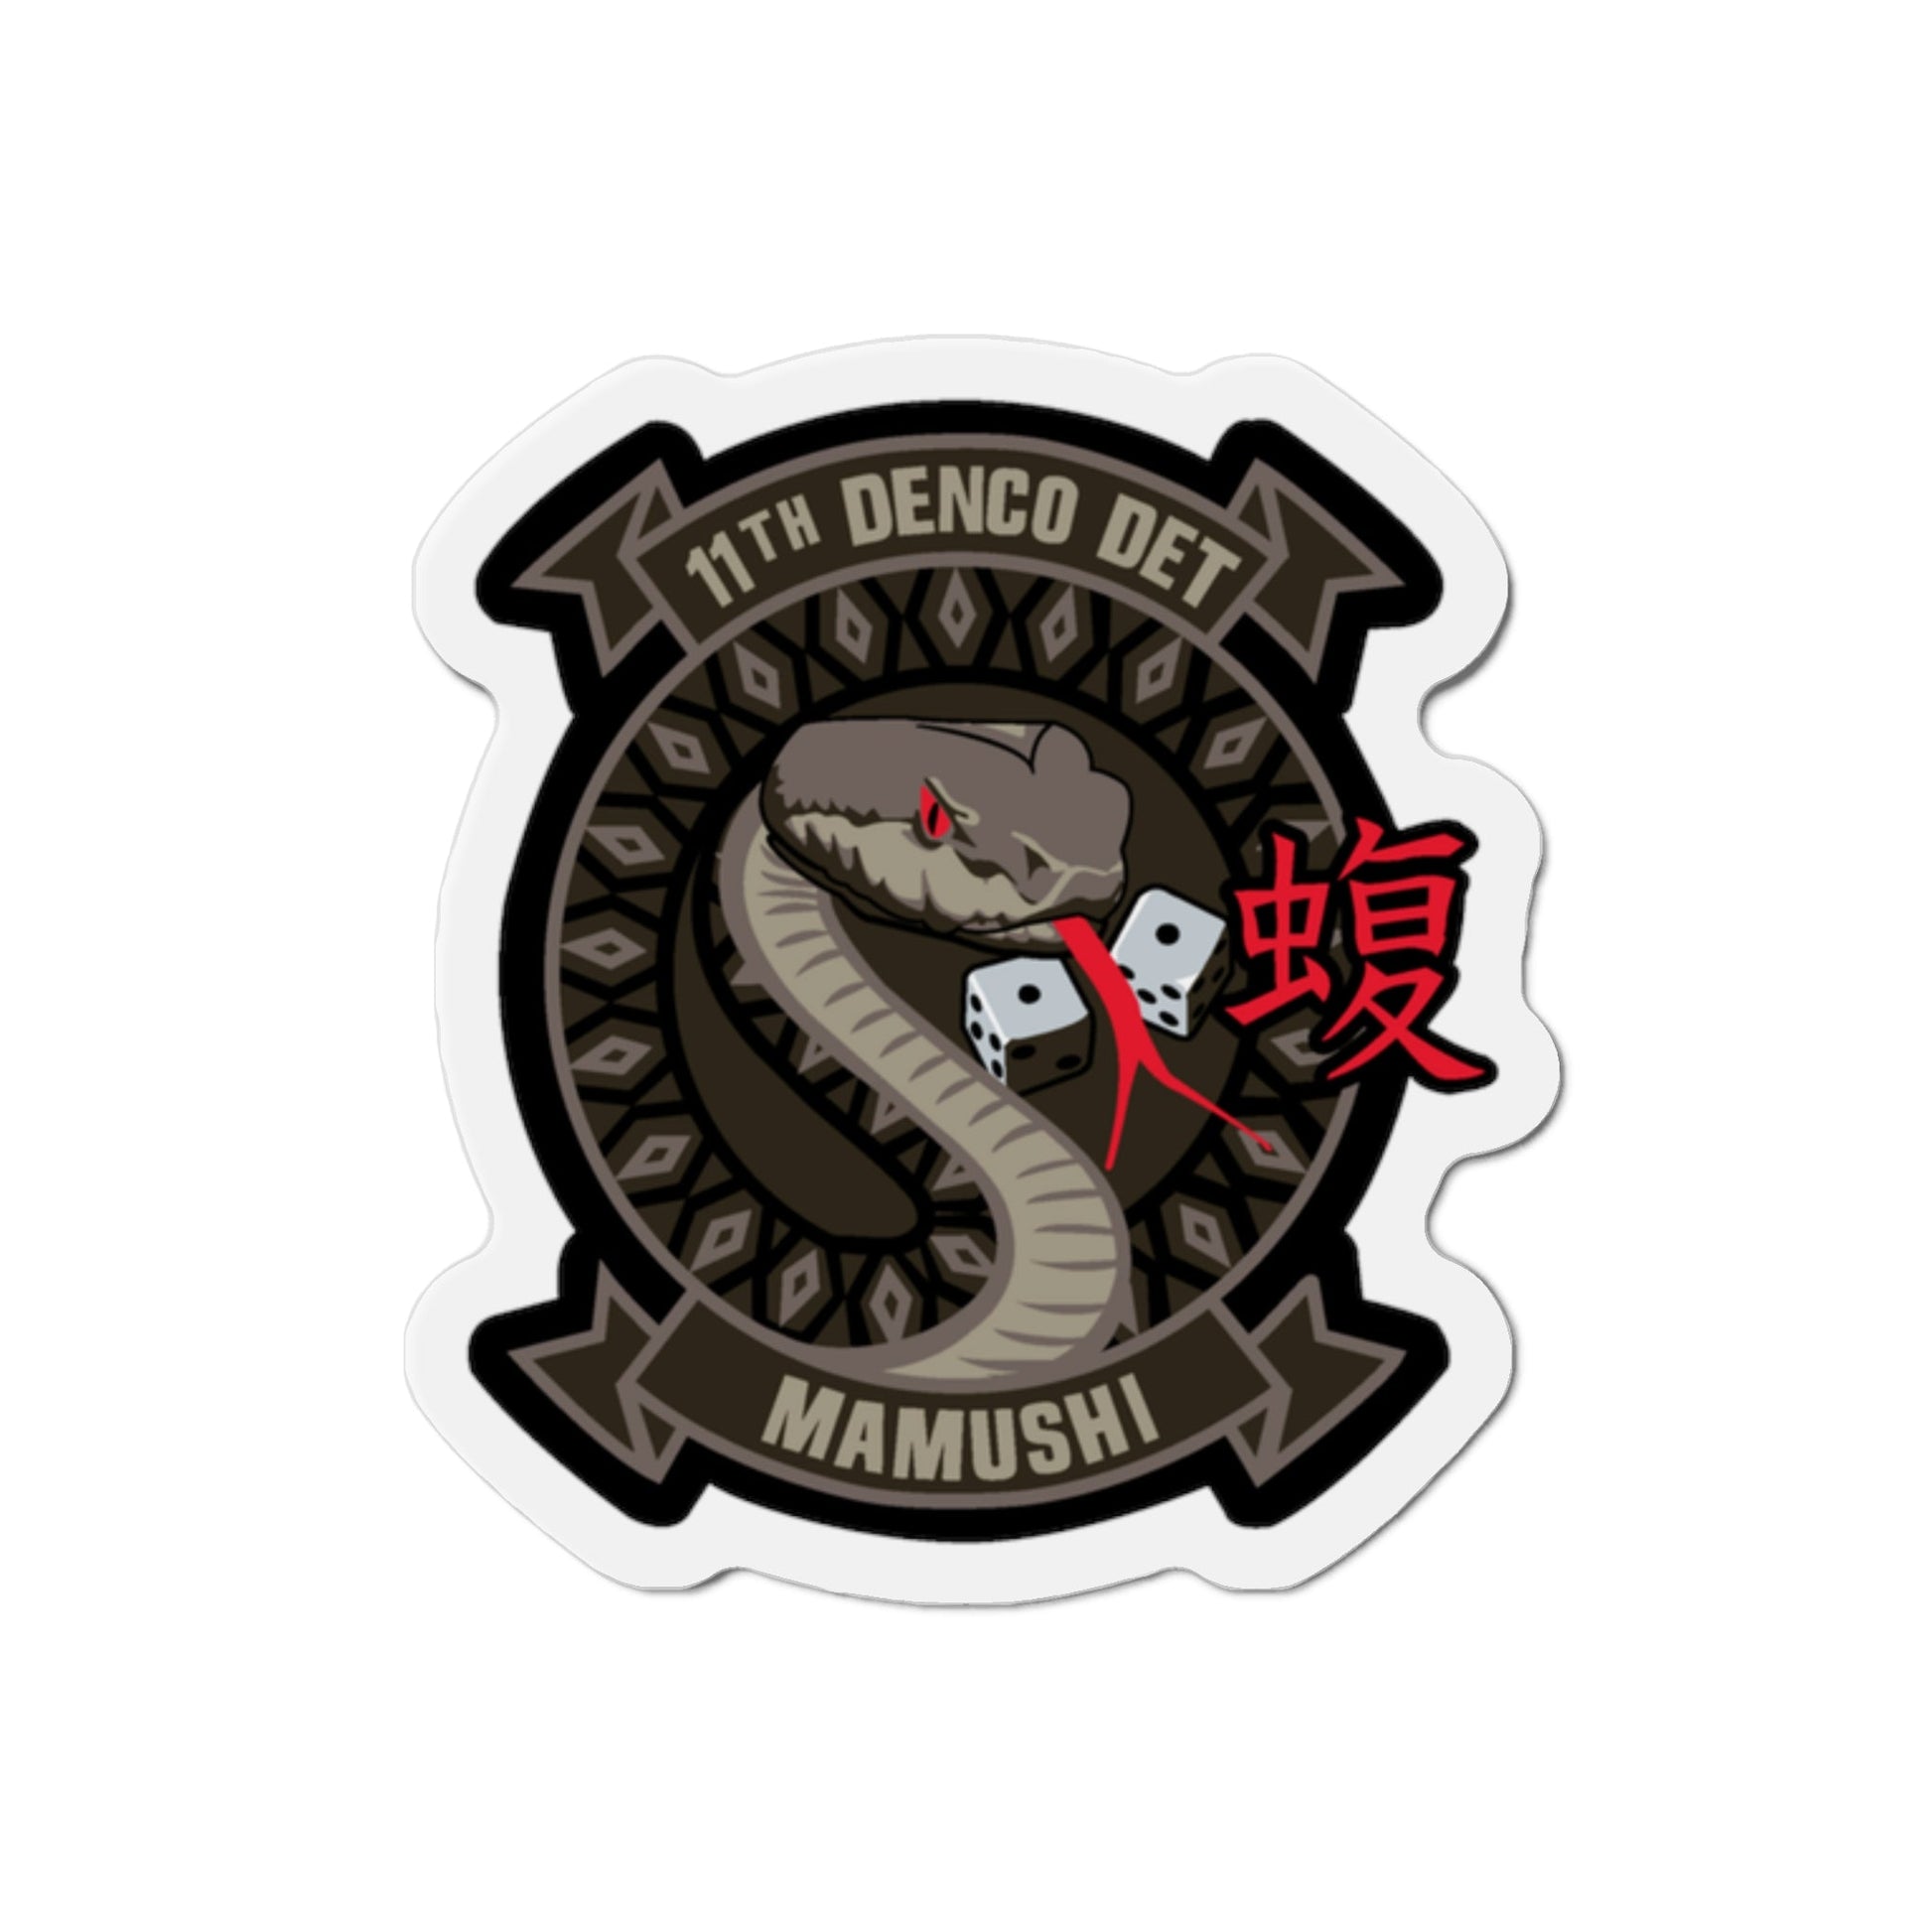 11th DENCO DET Mamushi (U.S. Navy) Die-Cut Magnet-2" x 2"-The Sticker Space